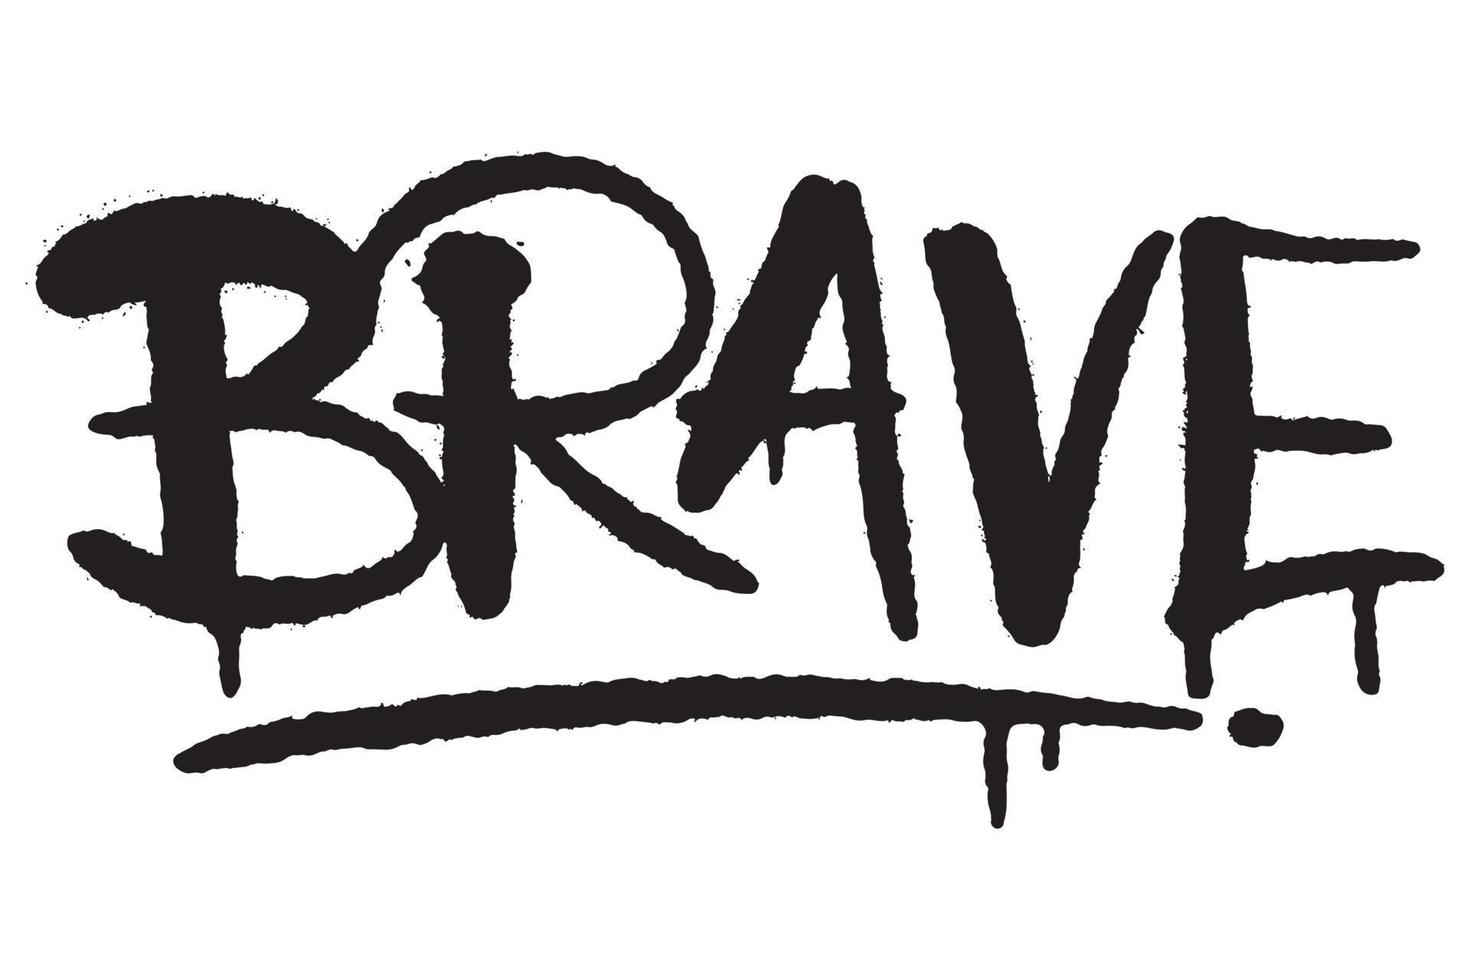 mutig Wort Typografie Graffiti Kunst schwarz sprühen Farbe isoliert auf Weiß vektor